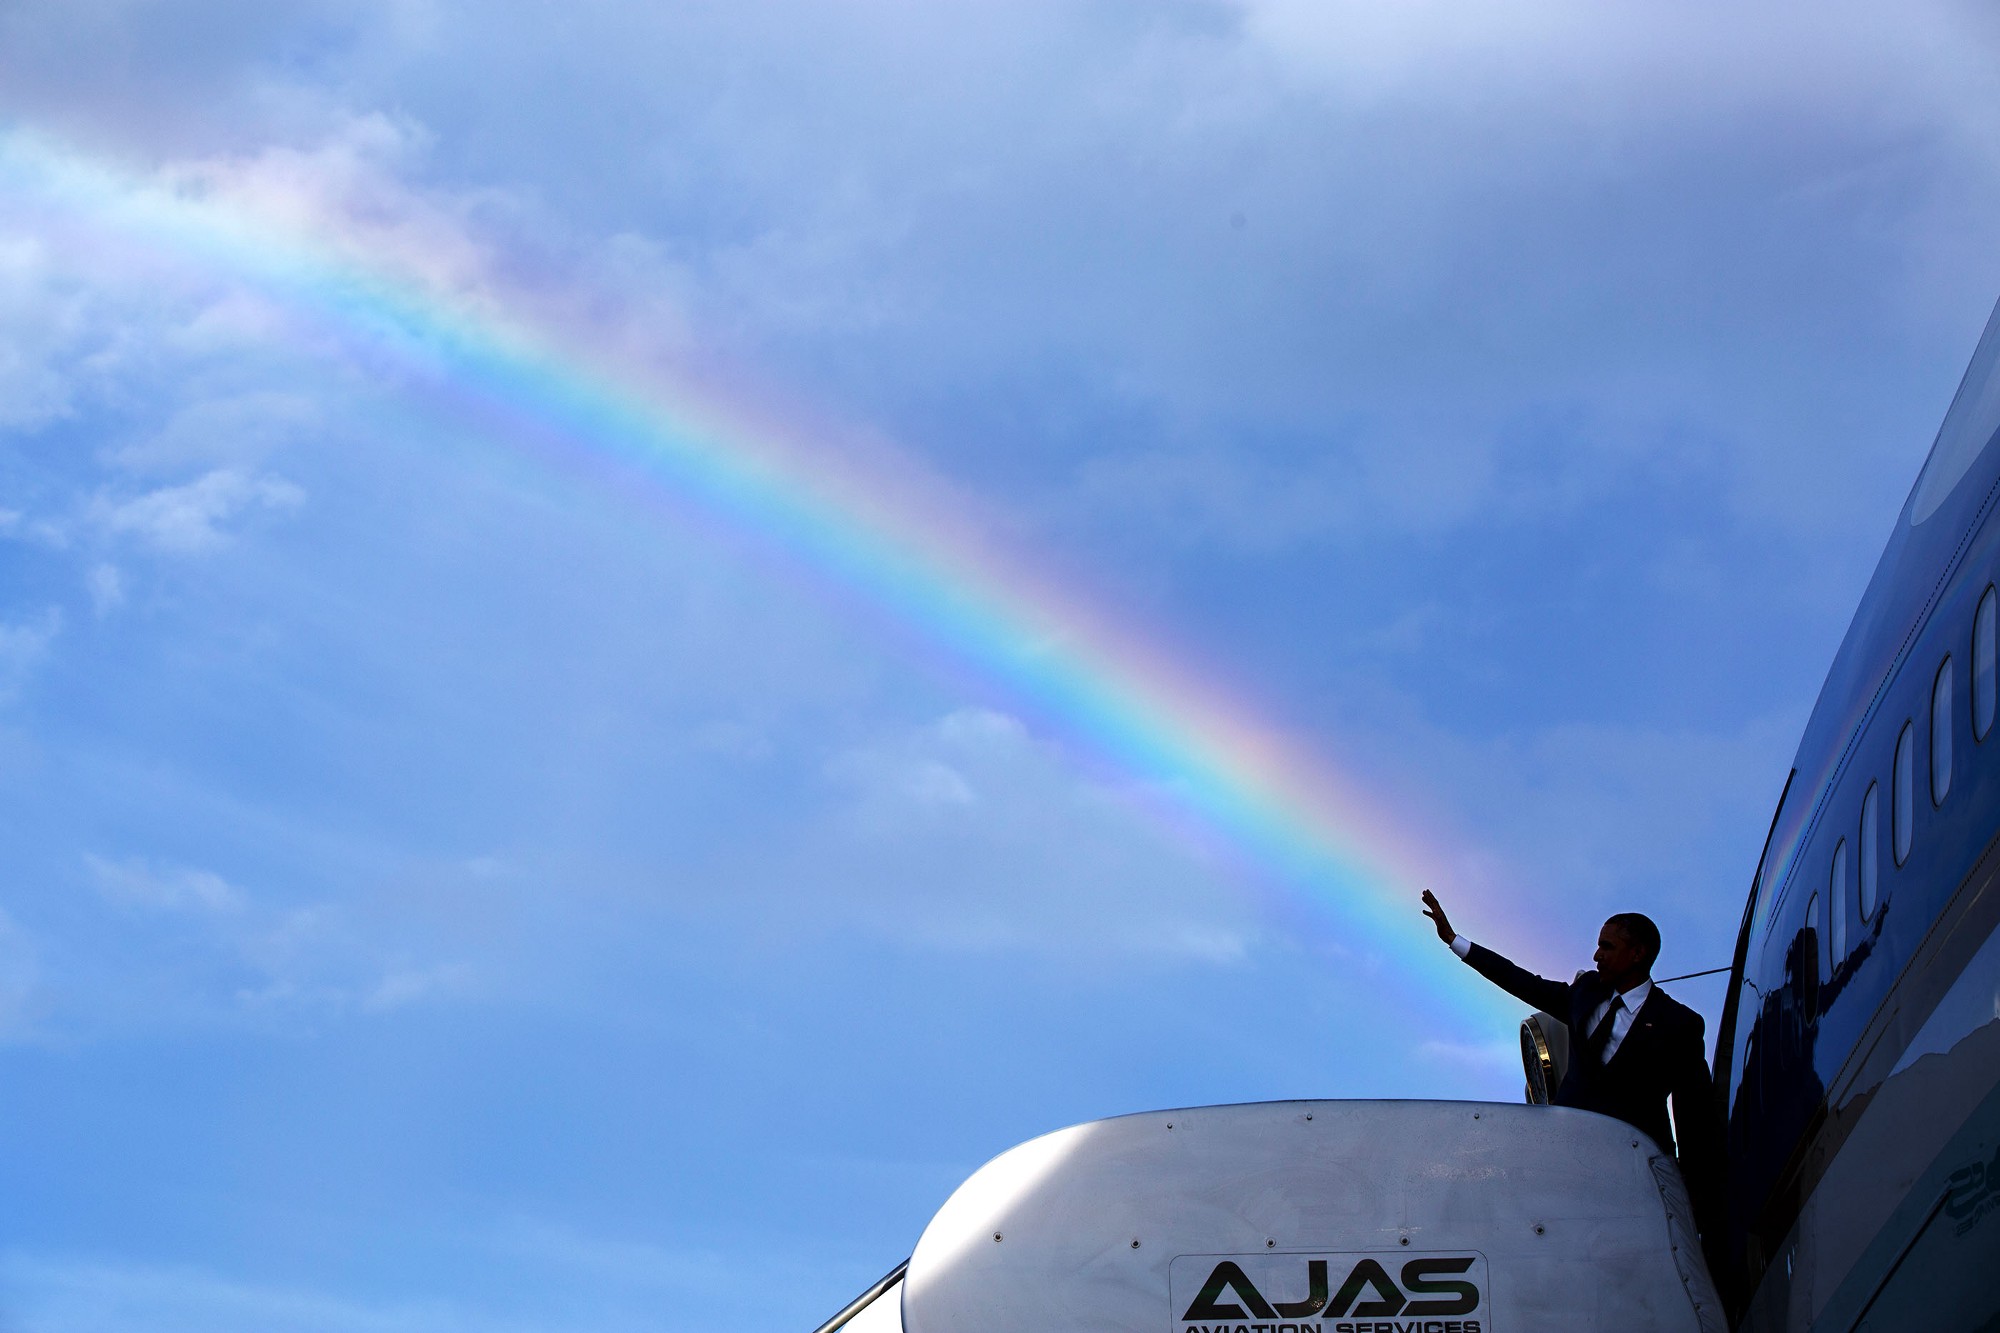 โอบามาโบกมือเป็นจังหวะซ้อนกับสายรุ้งพอดีขณะขึ้นเครื่องแอร์ฟอร์ซวันที่สนามบินนานาชาตินอร์แมน แมนลีย์ ในกรุงคิงสตัน ประเทศจาเมกา เมื่อ 9 เมษายน 2558 / Official White House Photo by Pete Souza